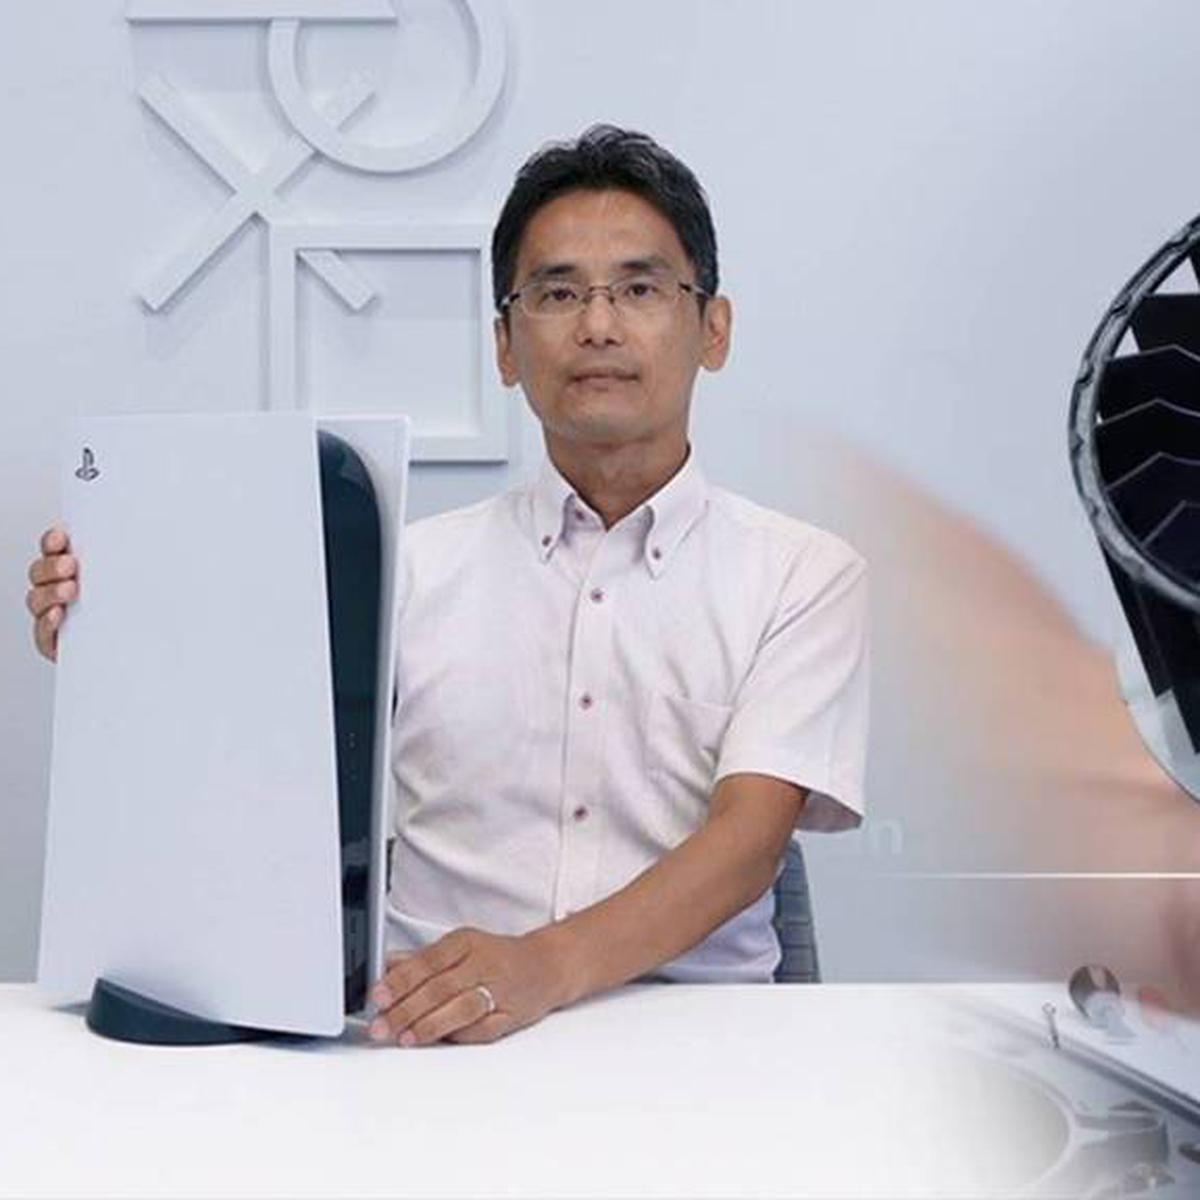 PS5 es tan grande por su ventilador, confirma un ingeniero de Sony